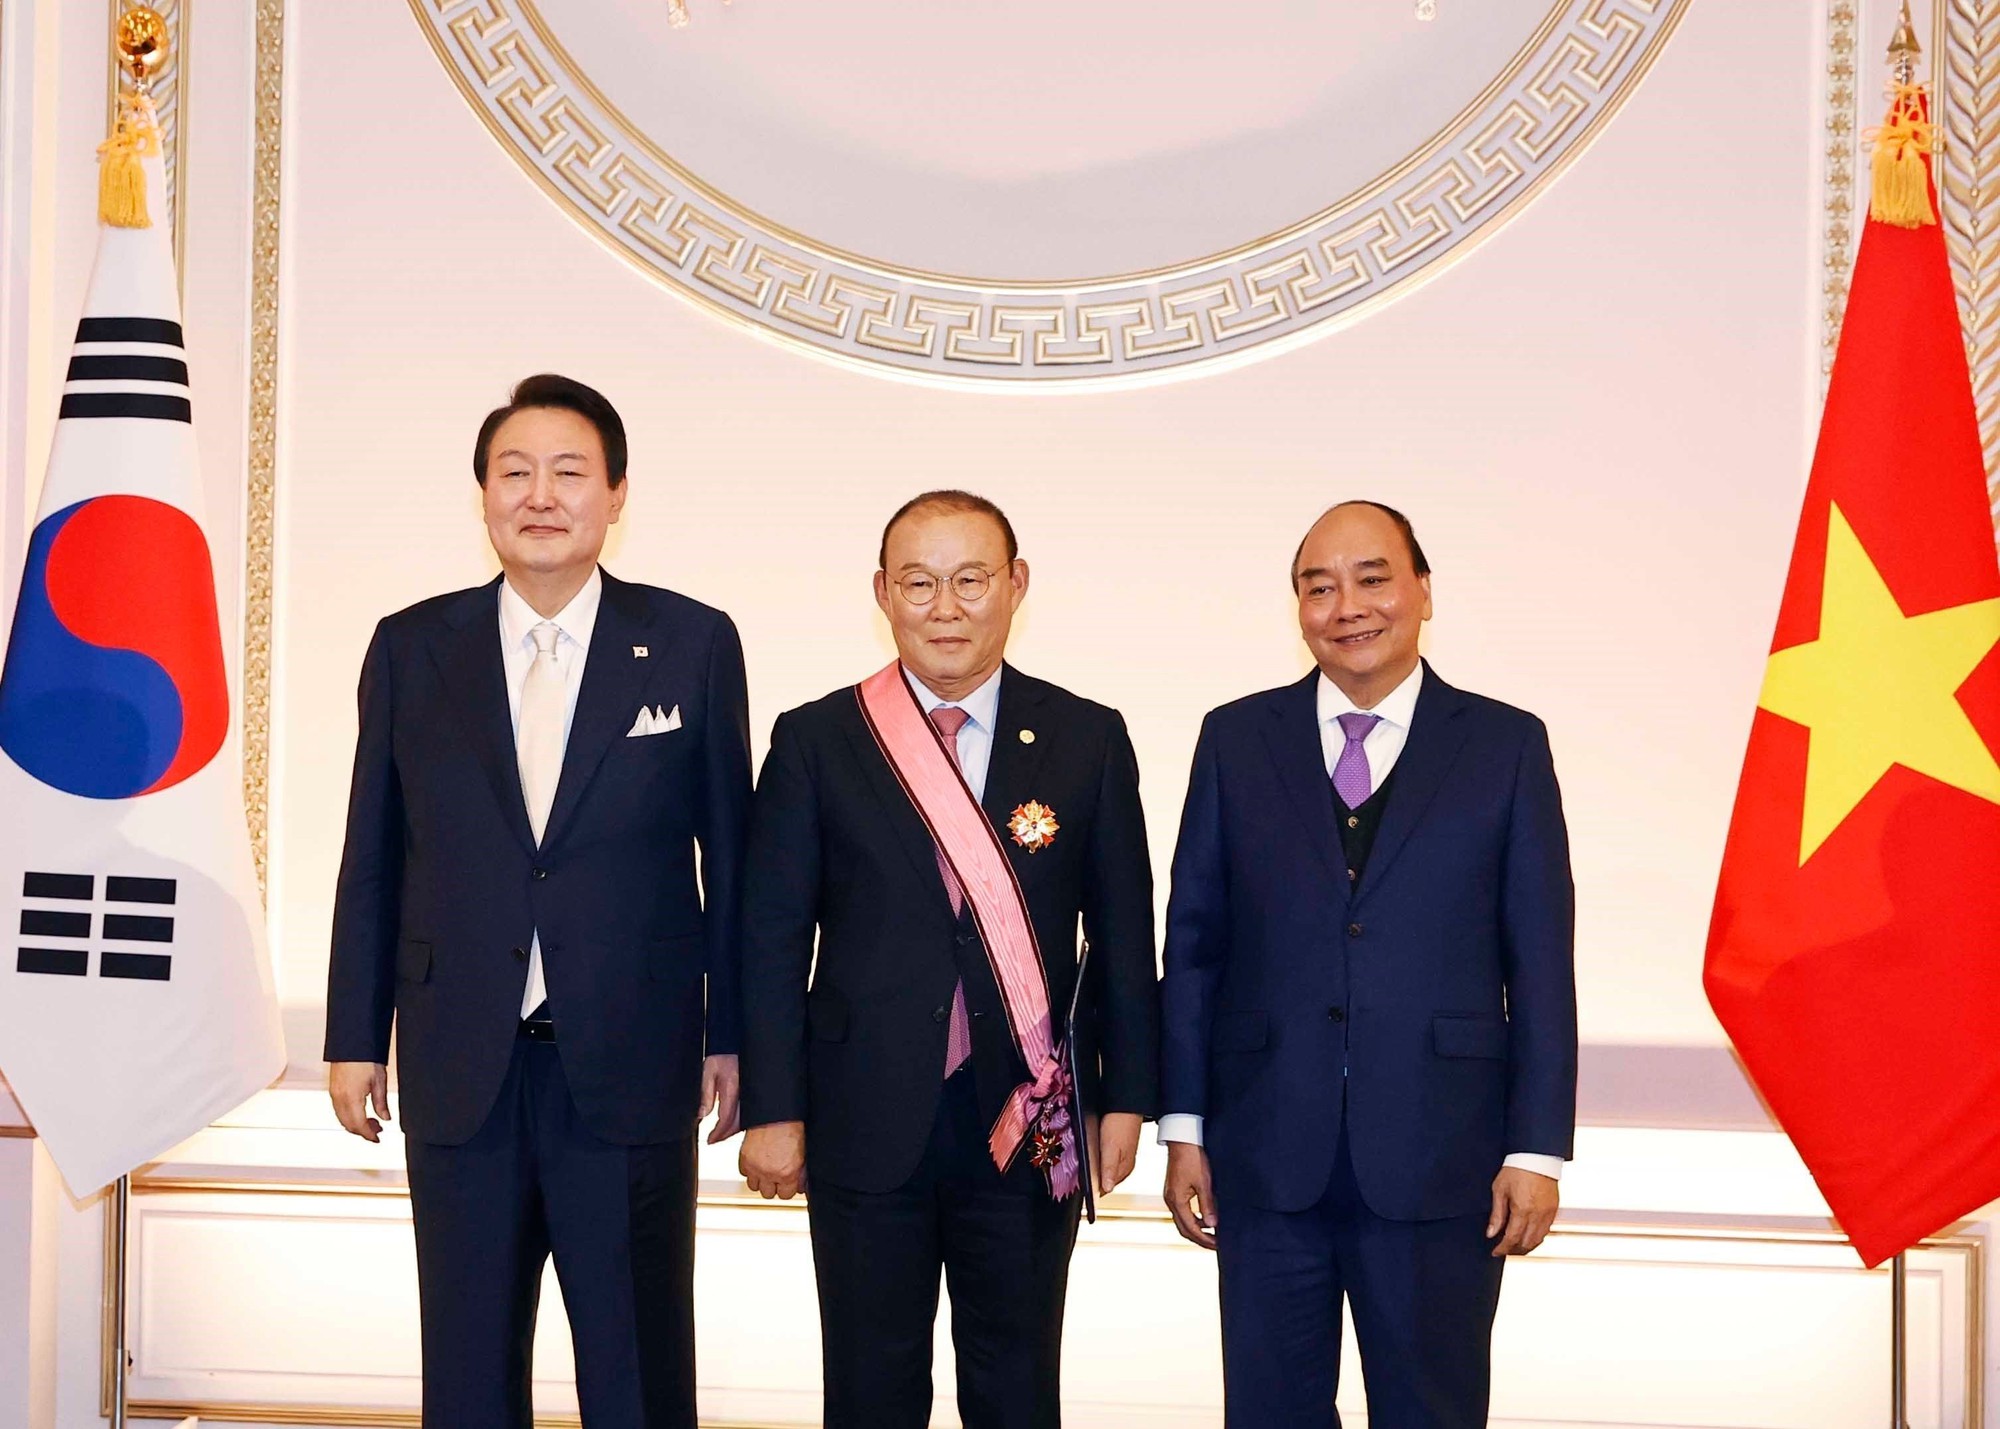 HLV Park Hang Seo nhận Huân chương Heungin vì đóng góp cho quan hệ Việt-Hàn - Ảnh 1.